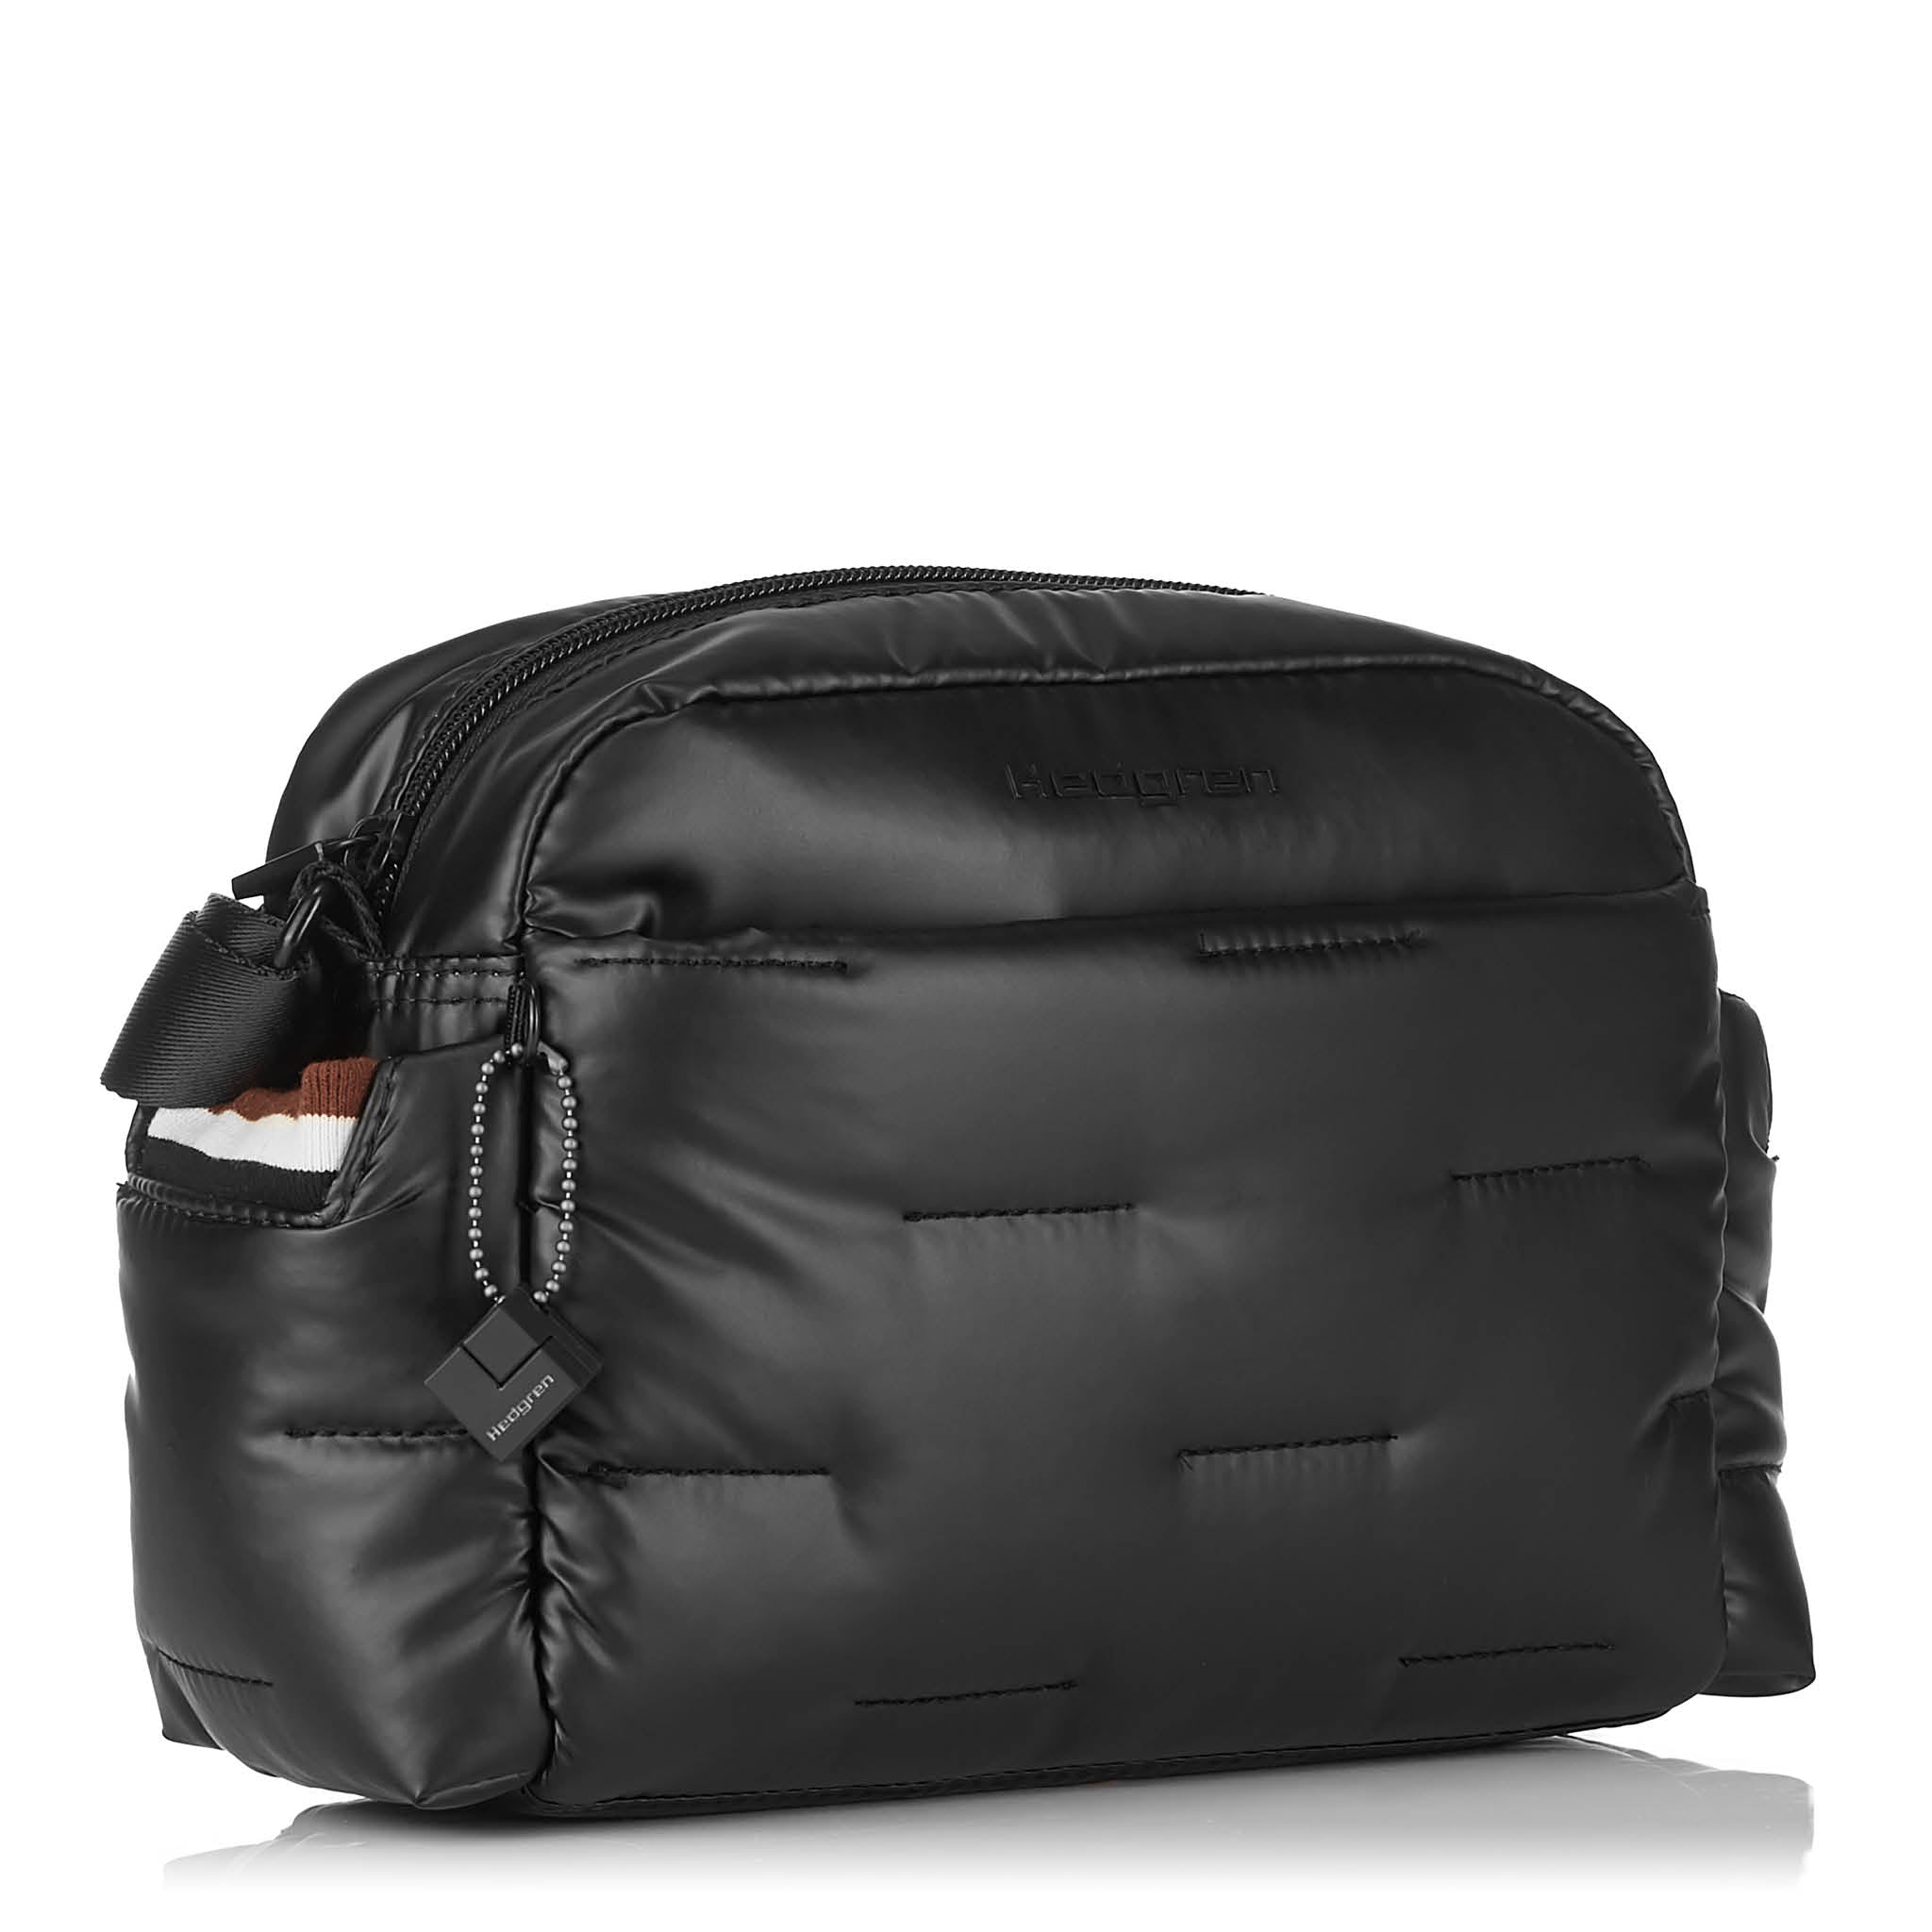 Hedgren Cozy Shoulder Bag Black